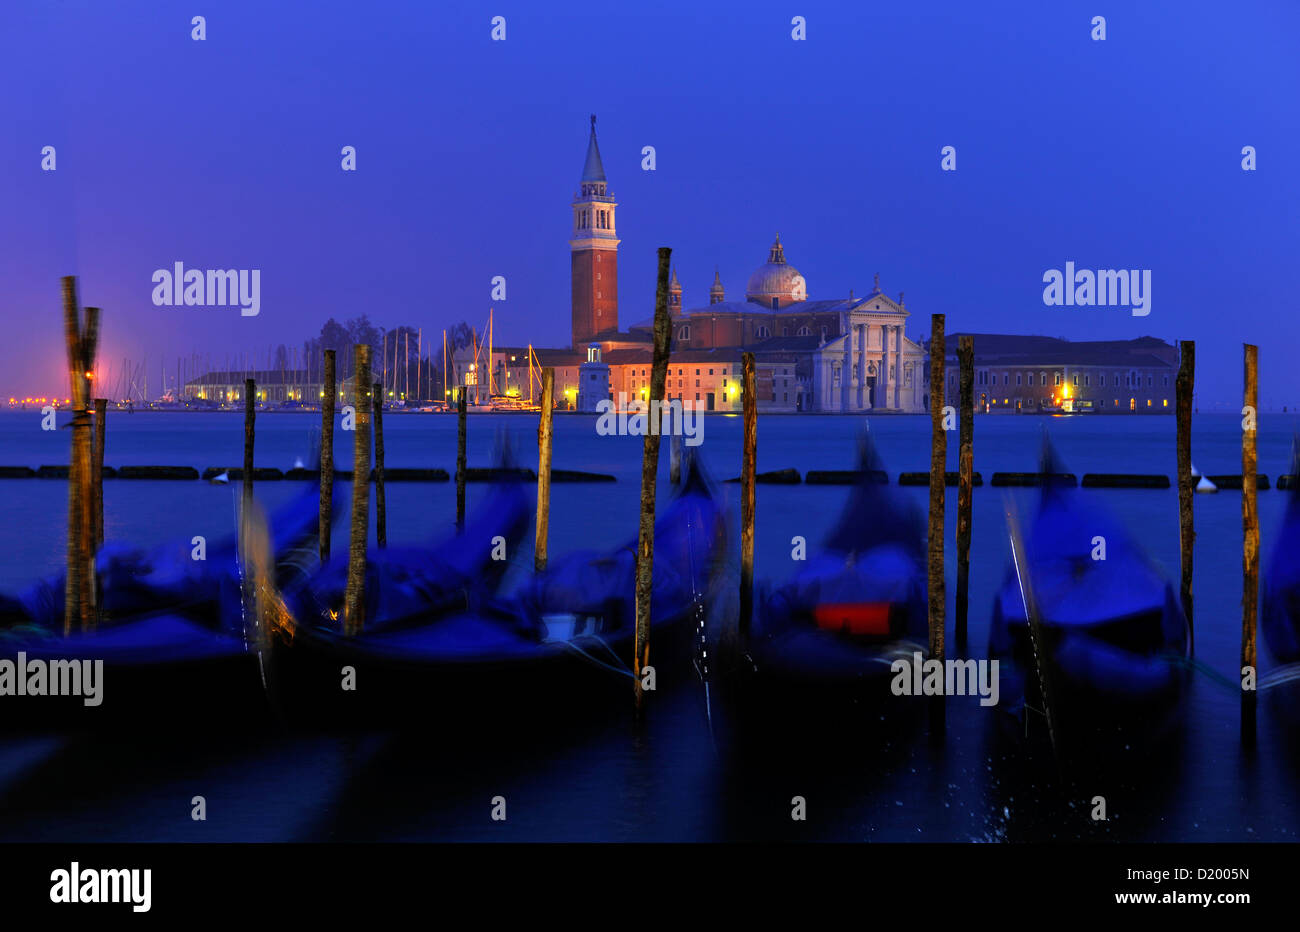 Gondolas, Piazzetta, San Giorgio Maggiore, Venice, Italy Stock Photo